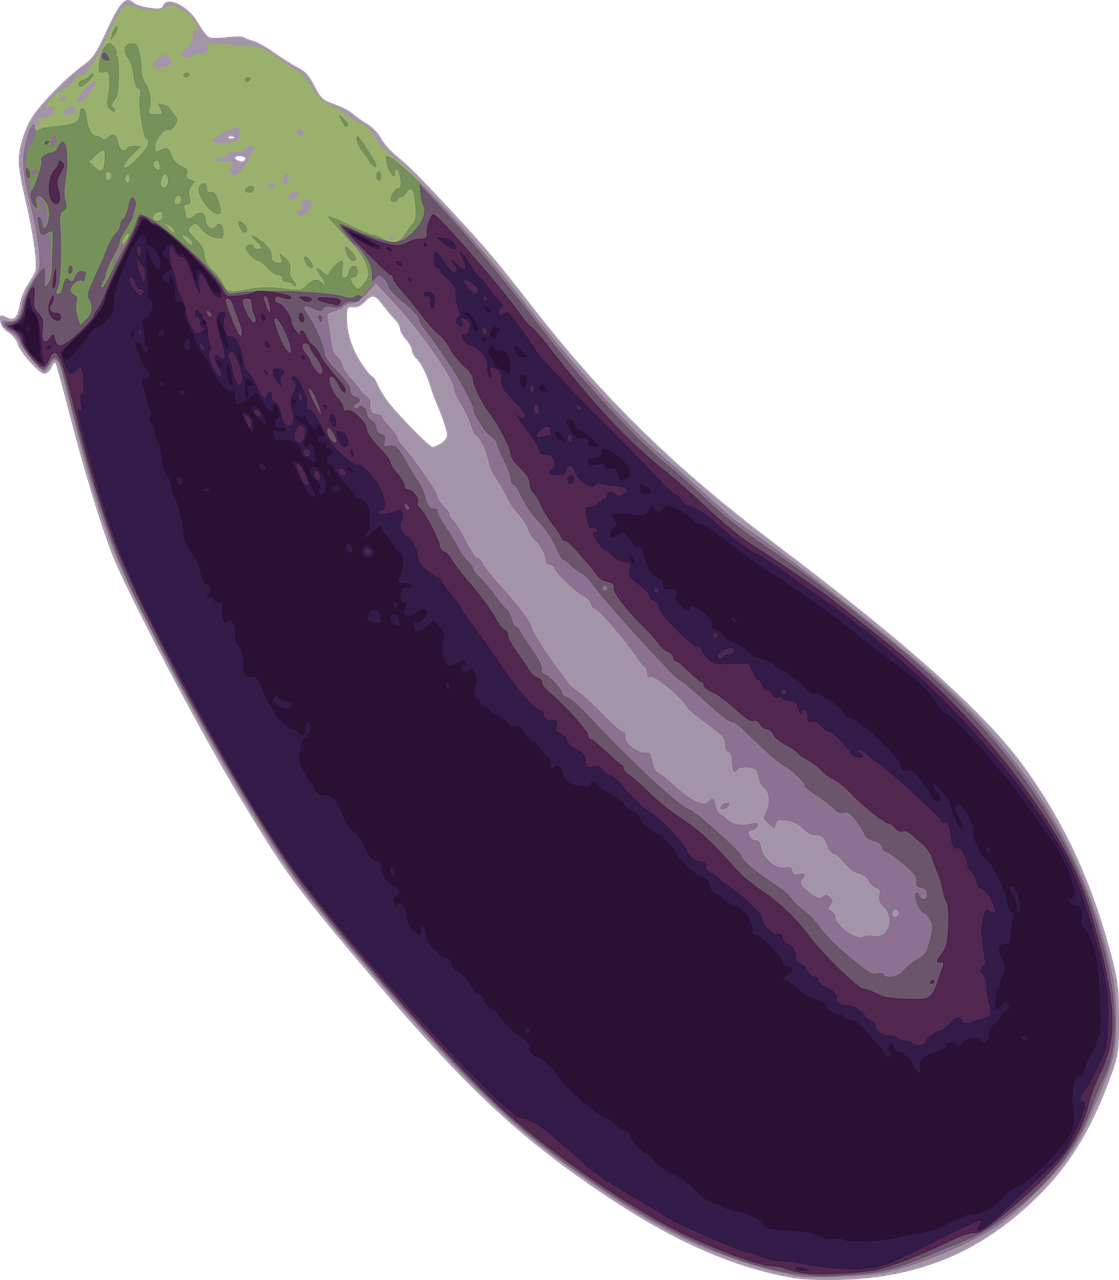 eggplant vegetable food free photo